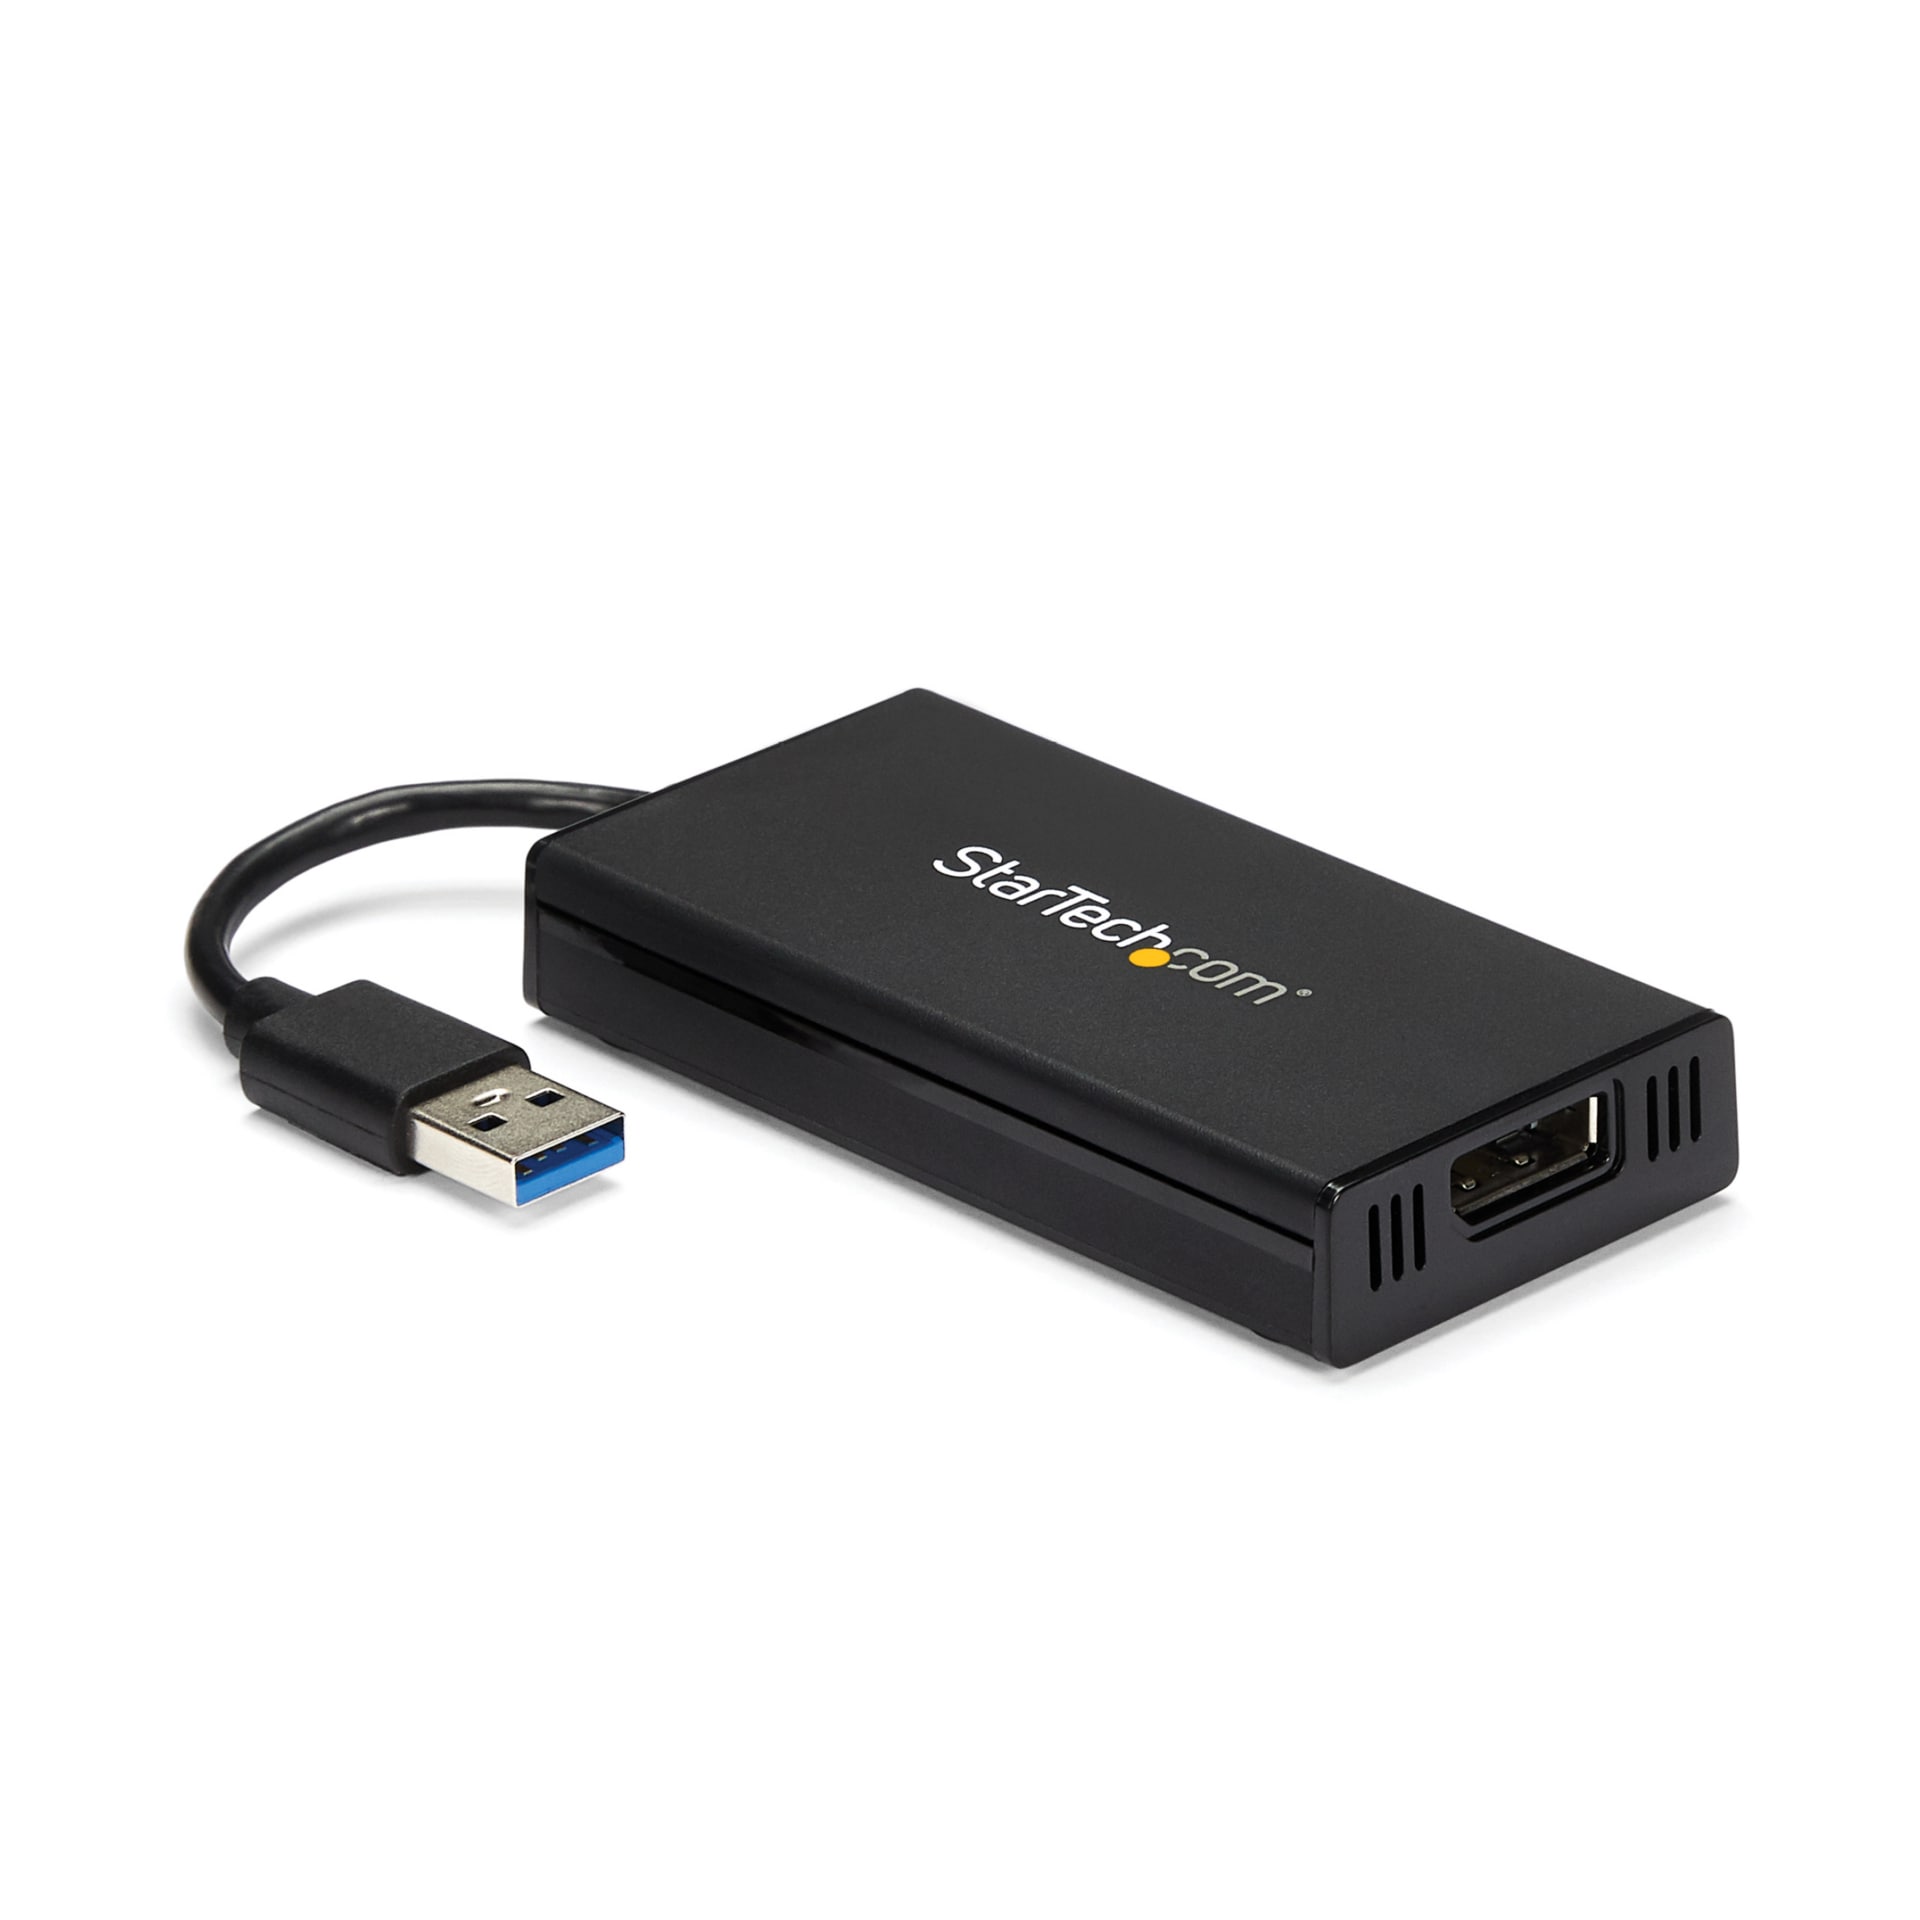 StarTech.com USB 3.0 to DisplayPort Adapter 4K 30Hz External Graphics Card